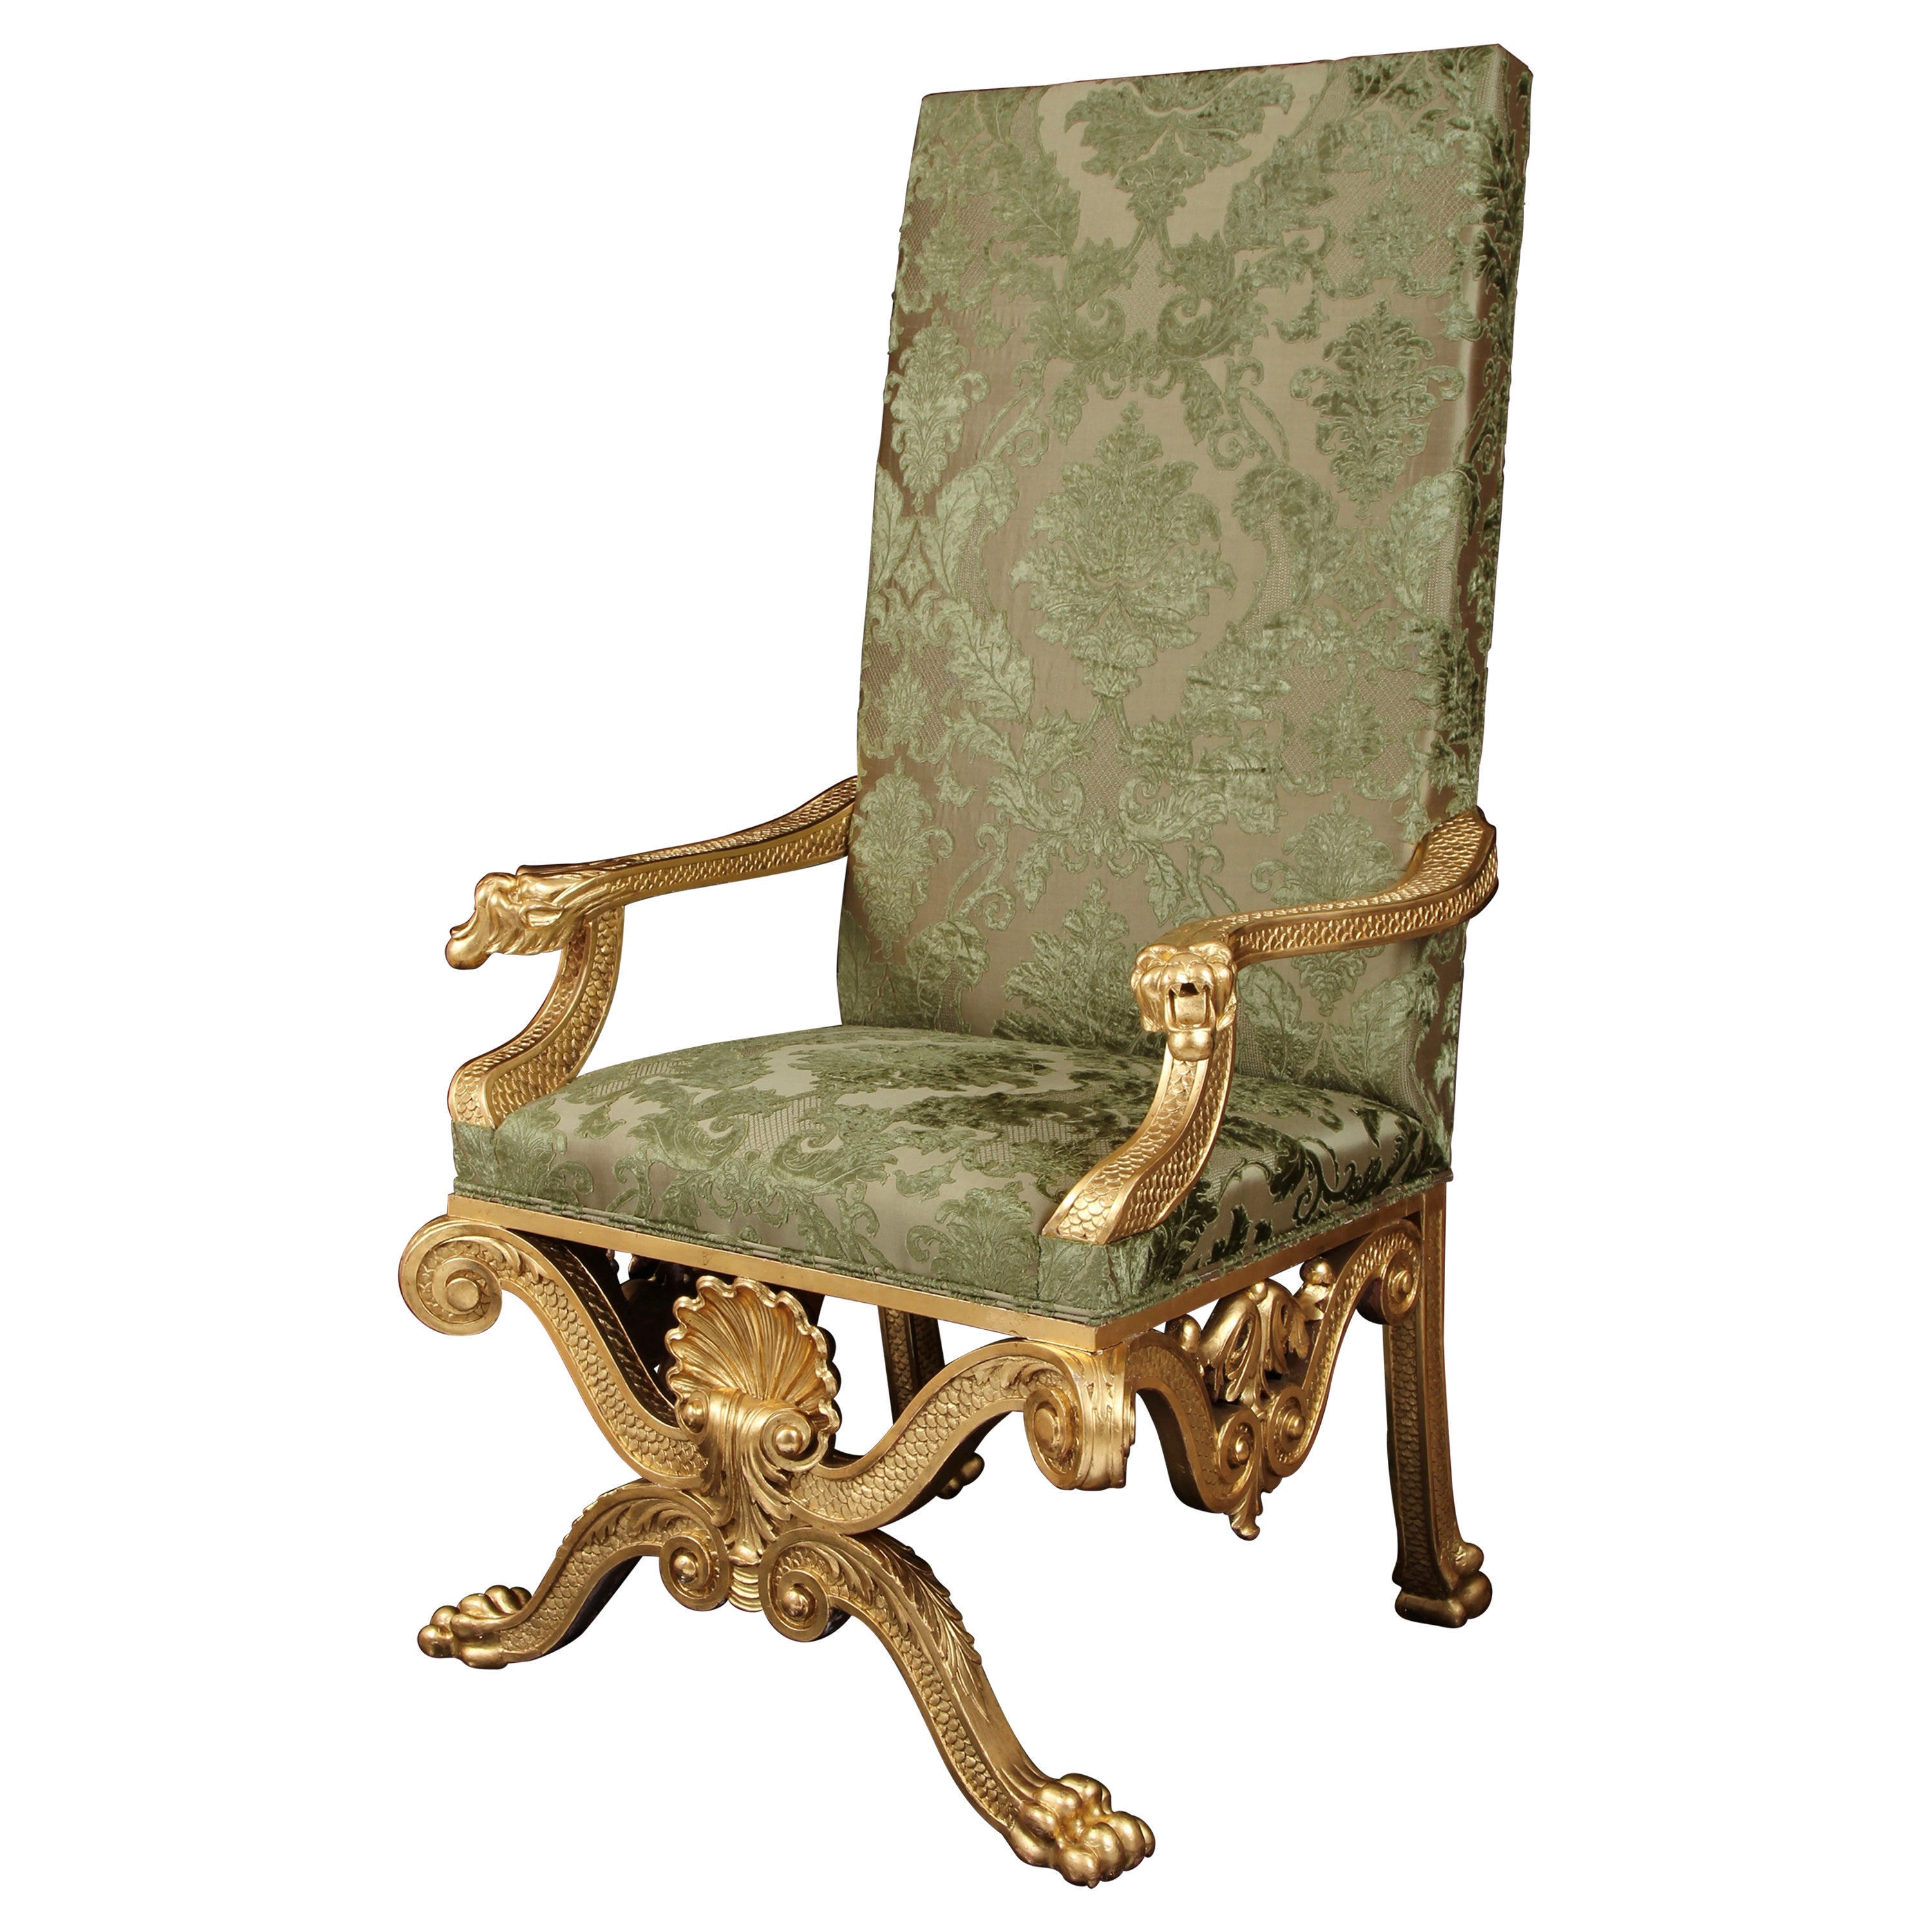 Fauteuil trône du 19ème siècle, design attribué à William Kent